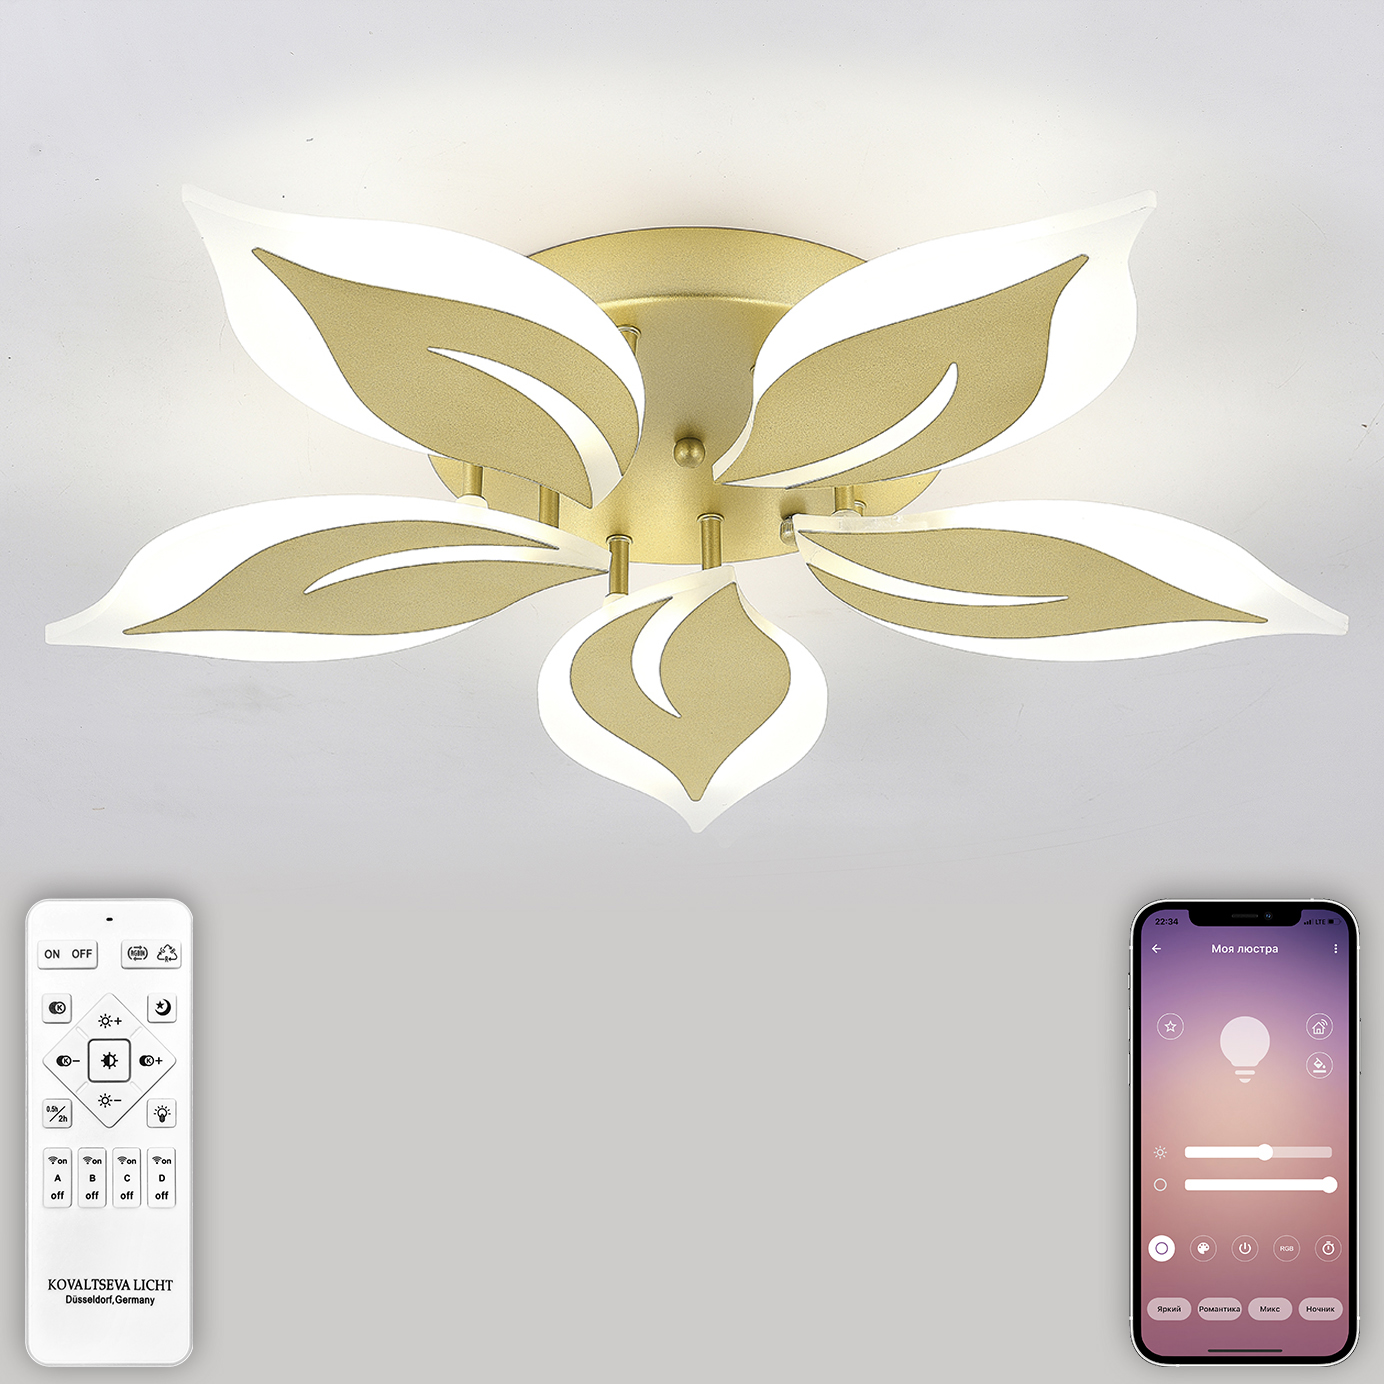 Светодиодный светильник NATALI KOVALTSEVA люстра 80W золотой LED - фото 1